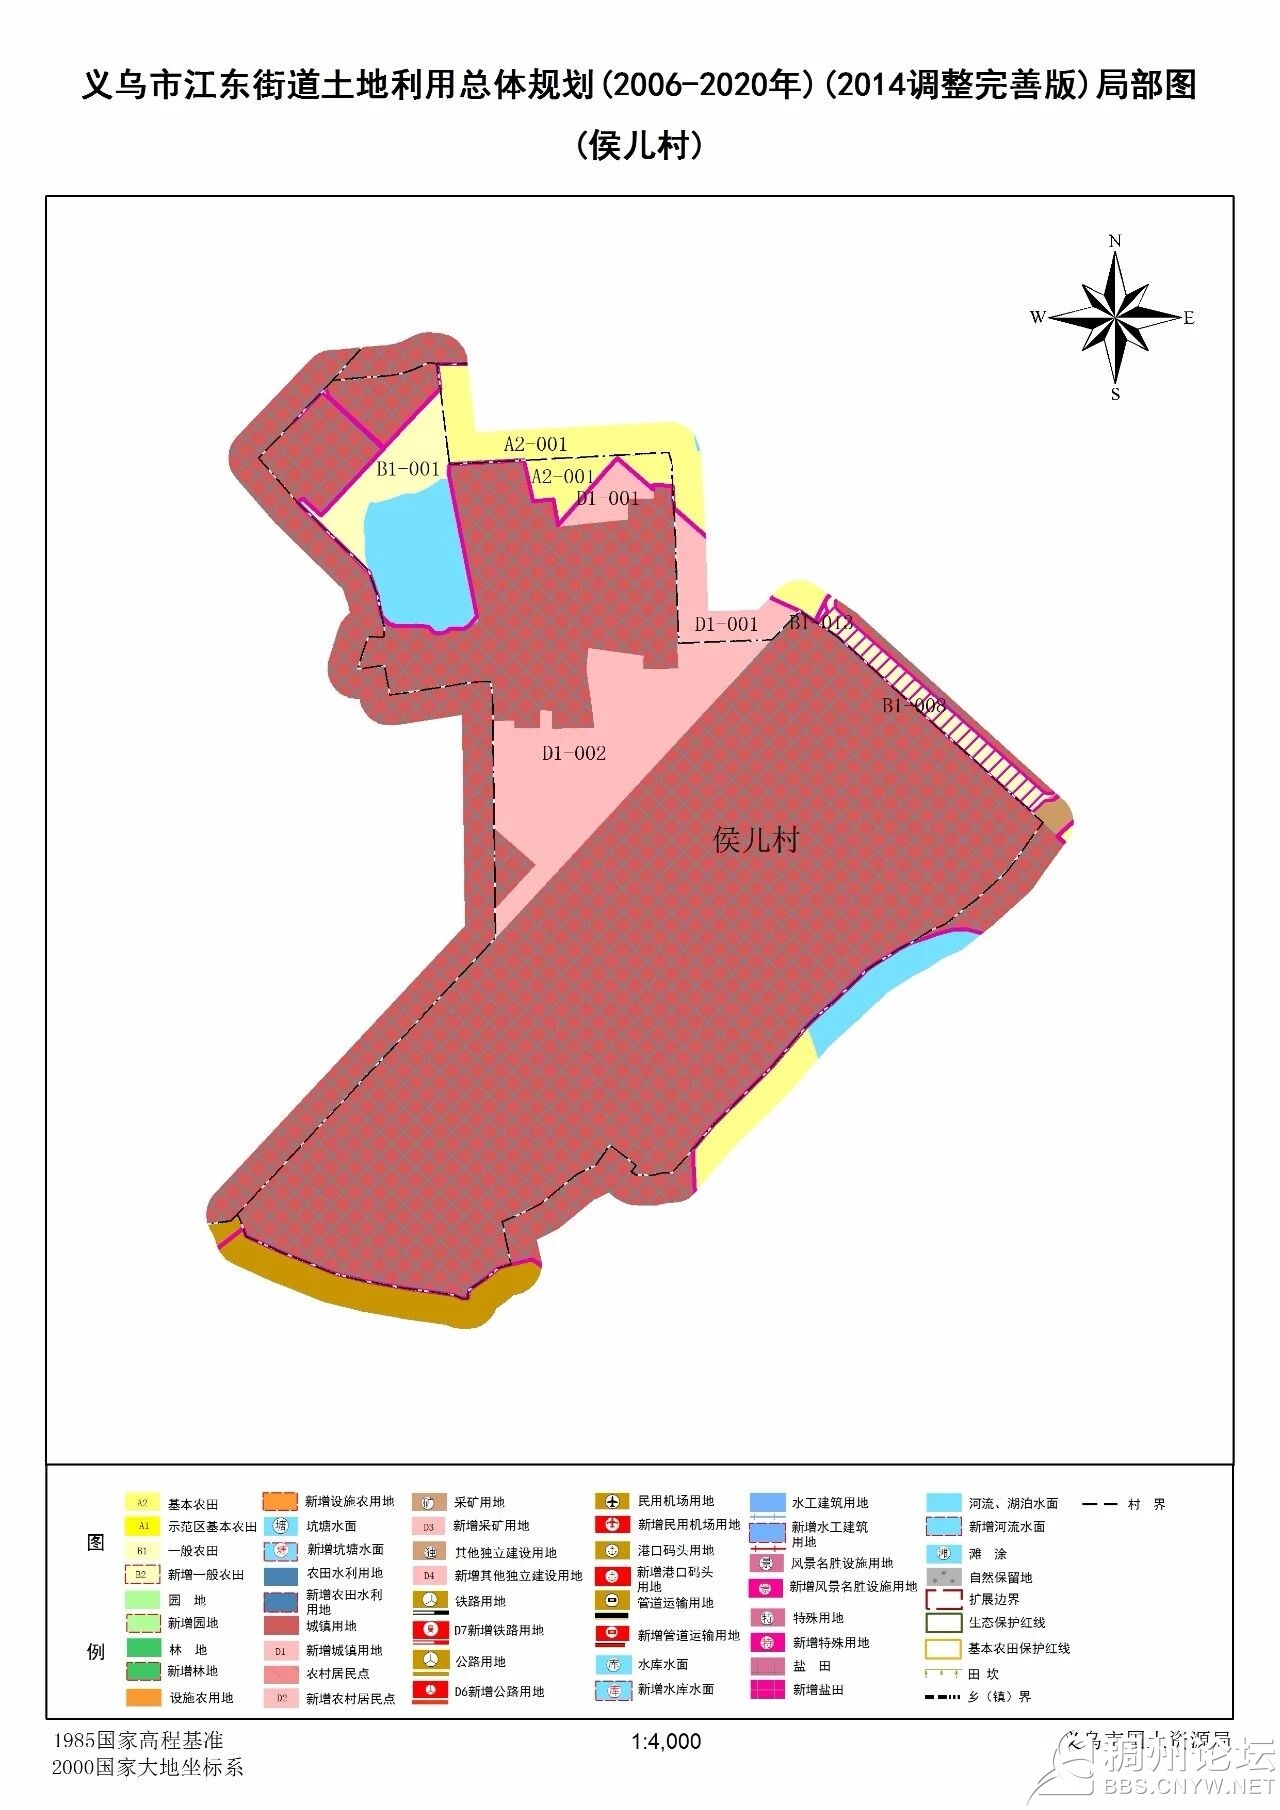 涉及义乌8个镇街,这16个地方土地利用总体规划(调整完善版)看这里!